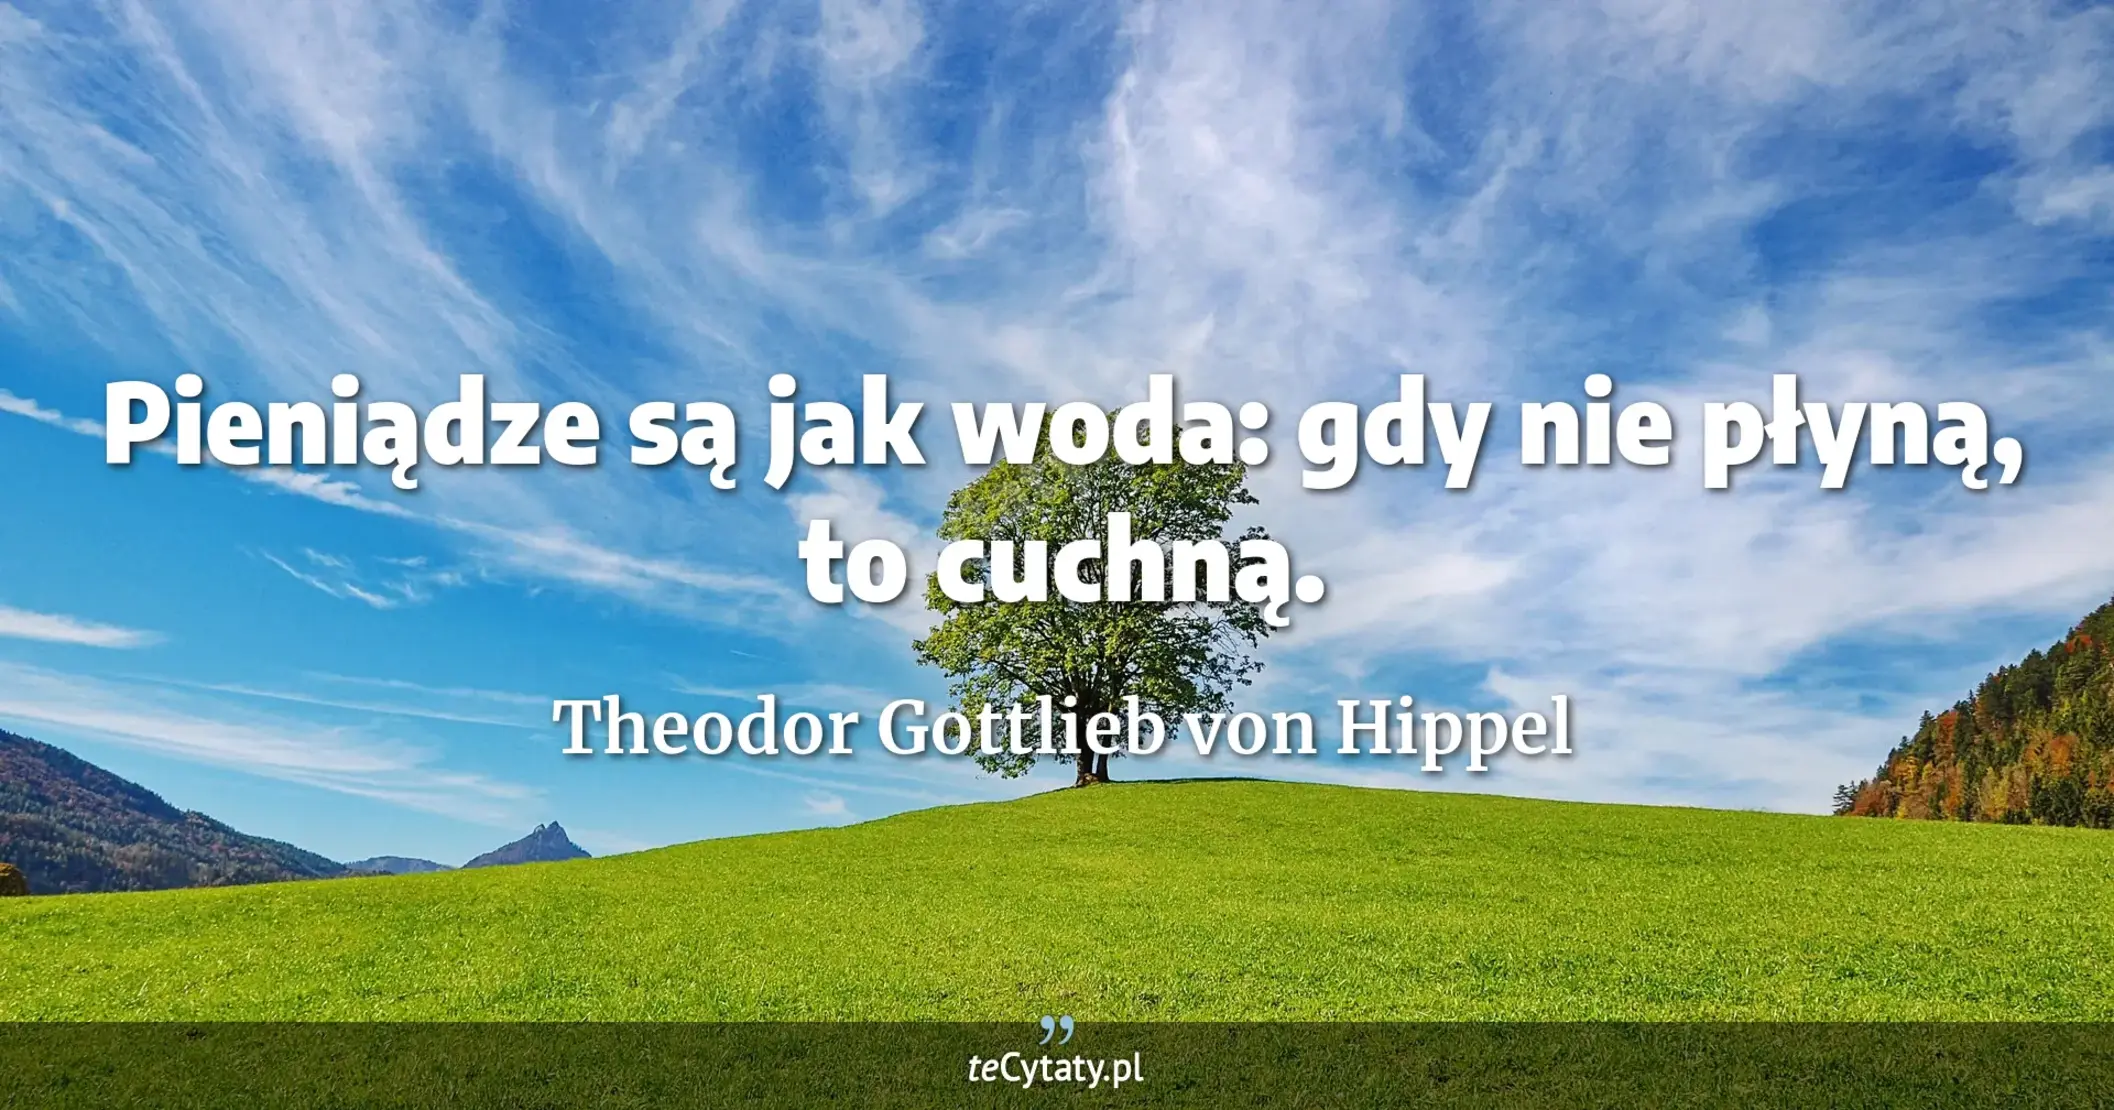 Pieniądze są jak woda: gdy nie płyną, to cuchną. - Theodor Gottlieb von Hippel